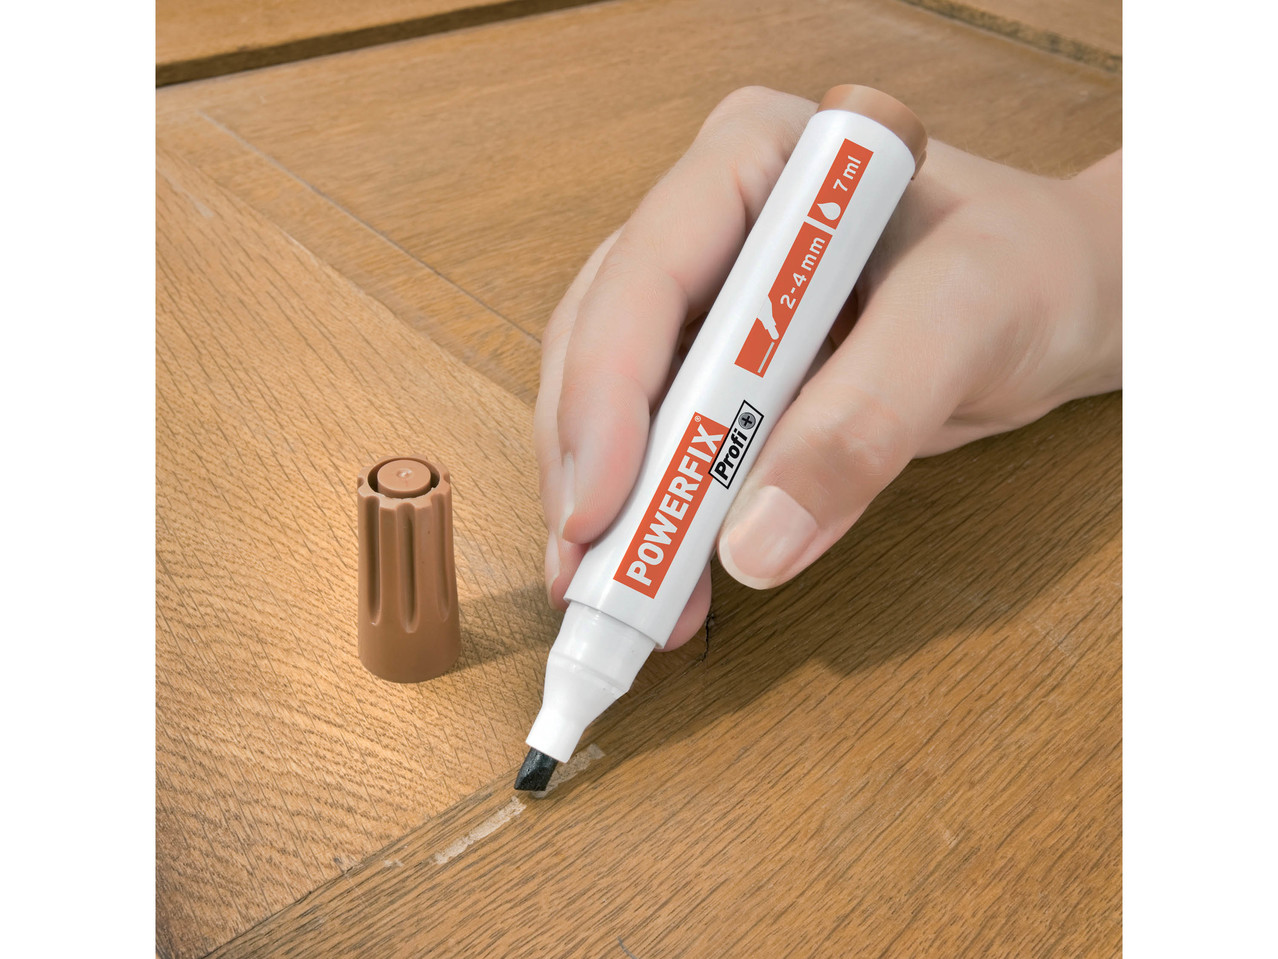 POWERFIX/UHU Touch-Up Pen/ Super Glue